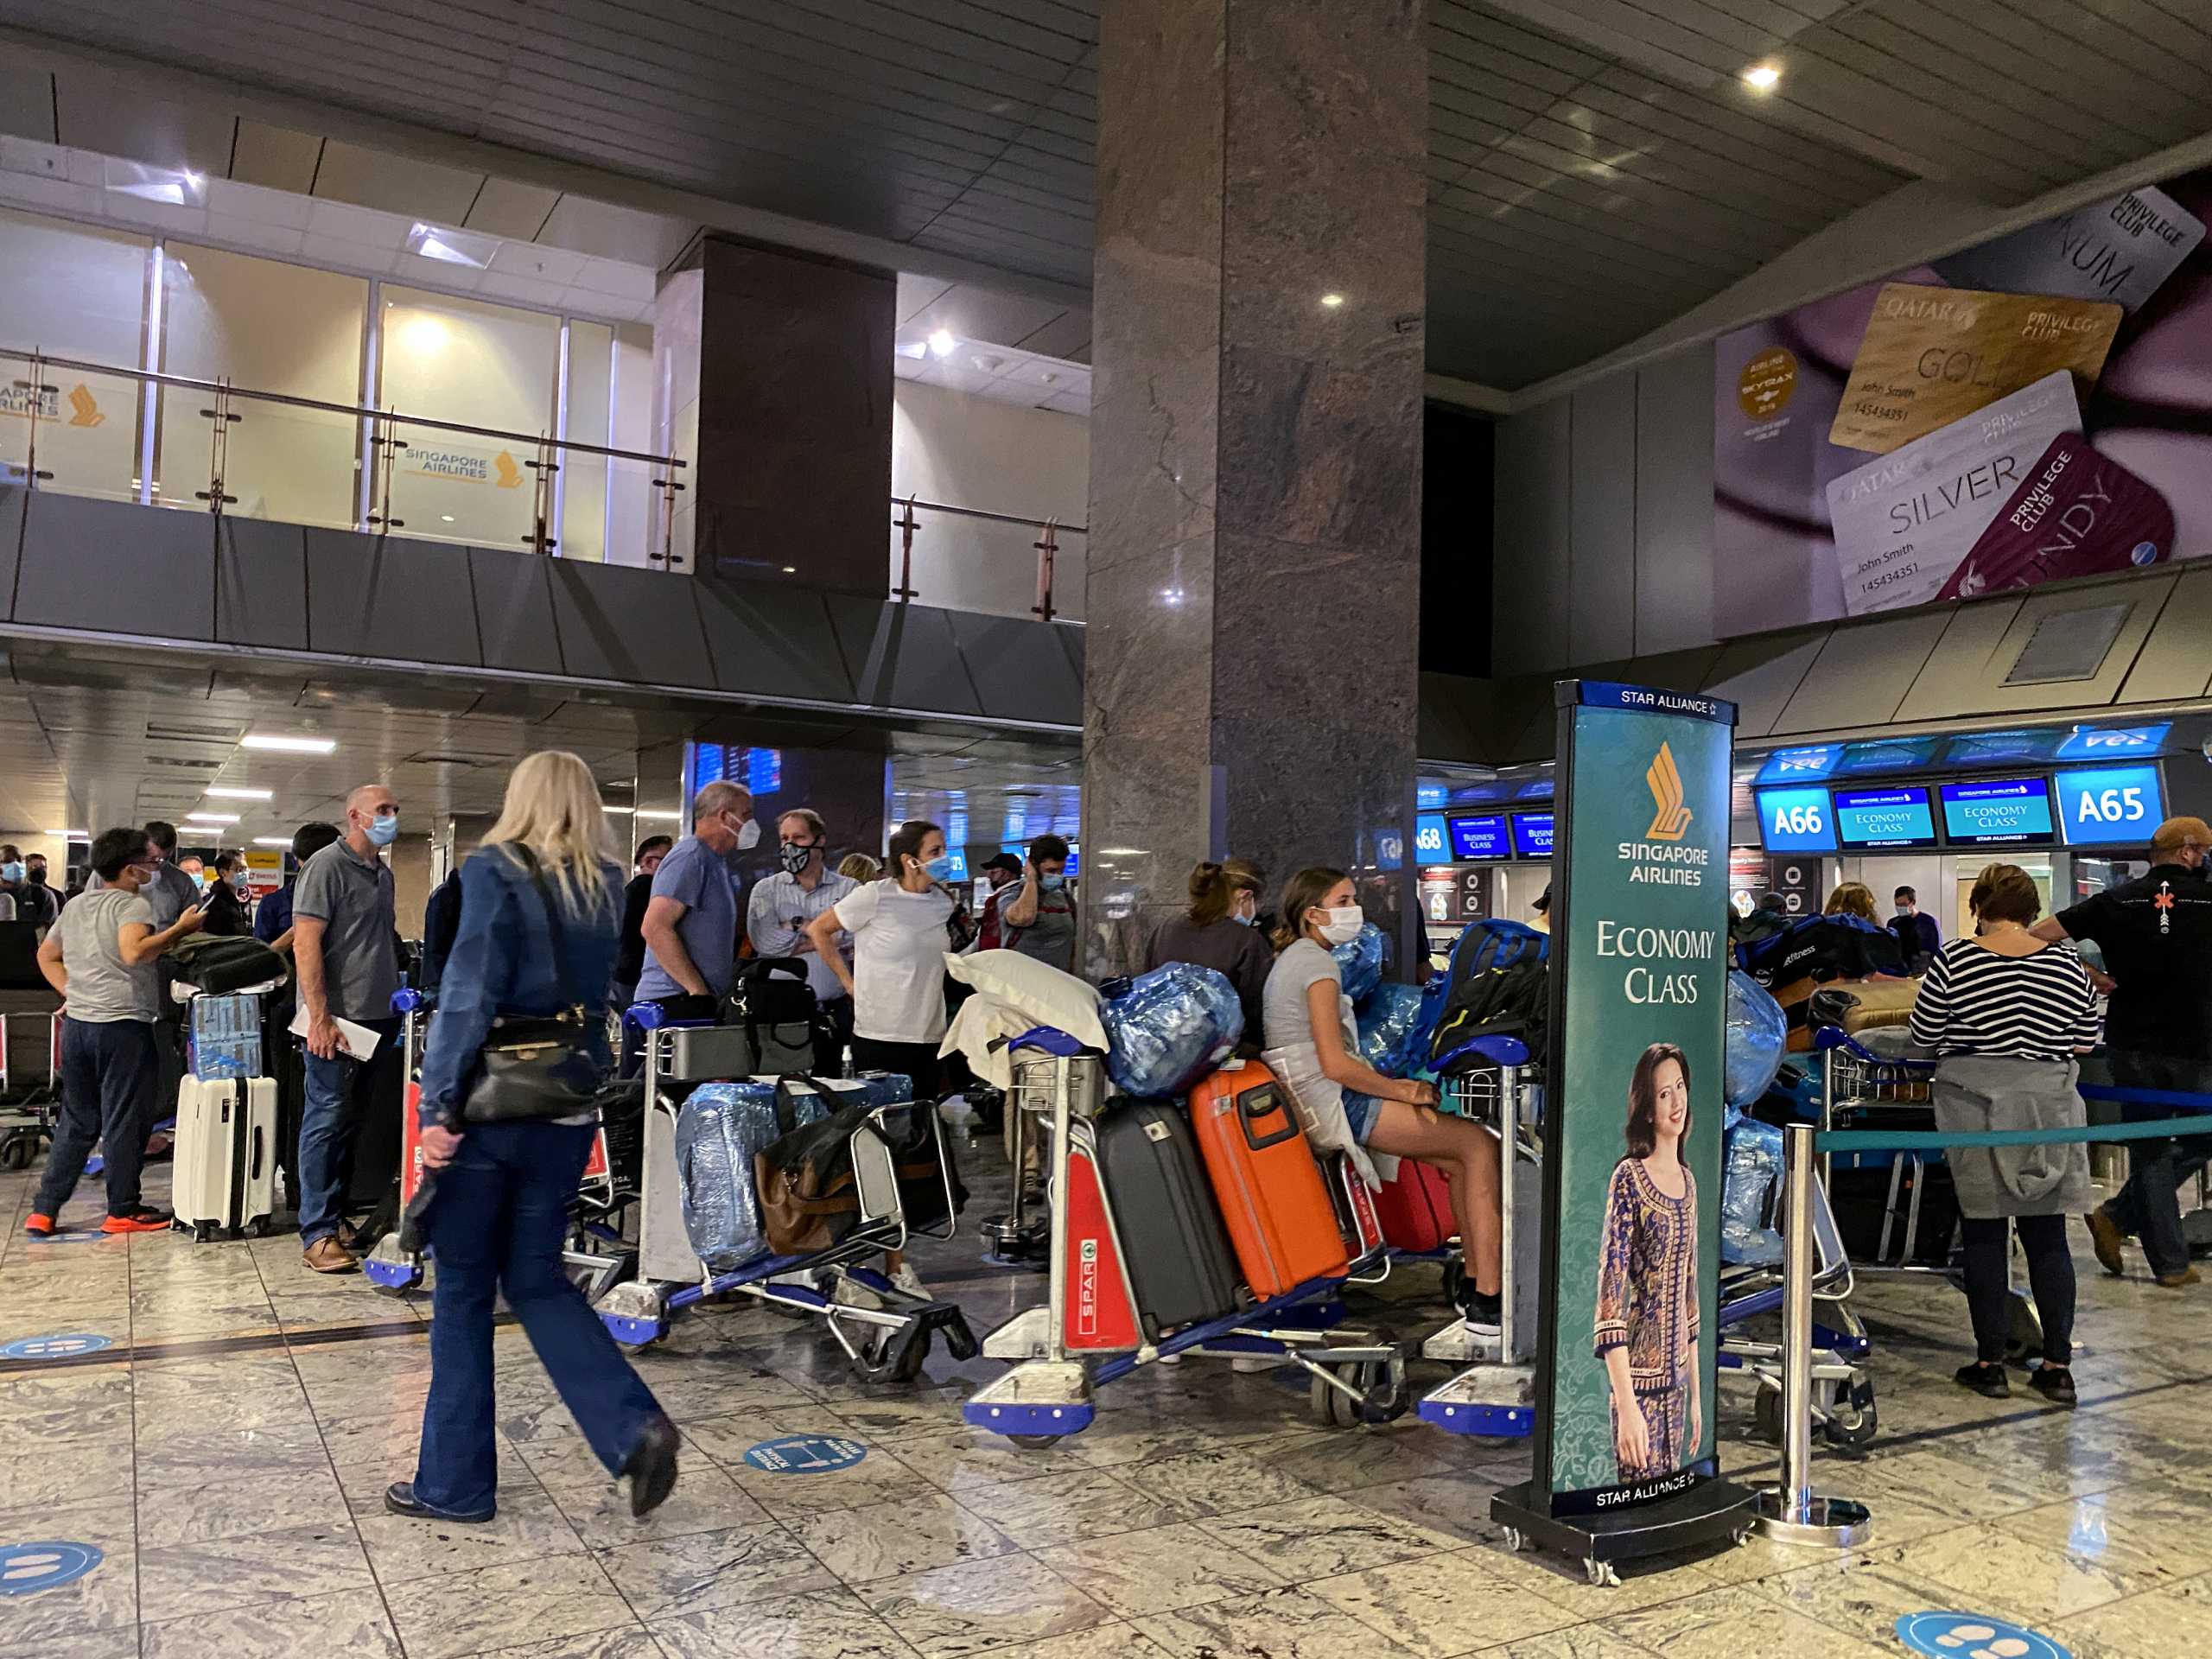 Κορονοϊός – Νότια Αφρική: Εκατοντάδες ταξιδιώτες στο αεροδρόμιο για να φύγουν πριν κλείσουν τα σύνορα